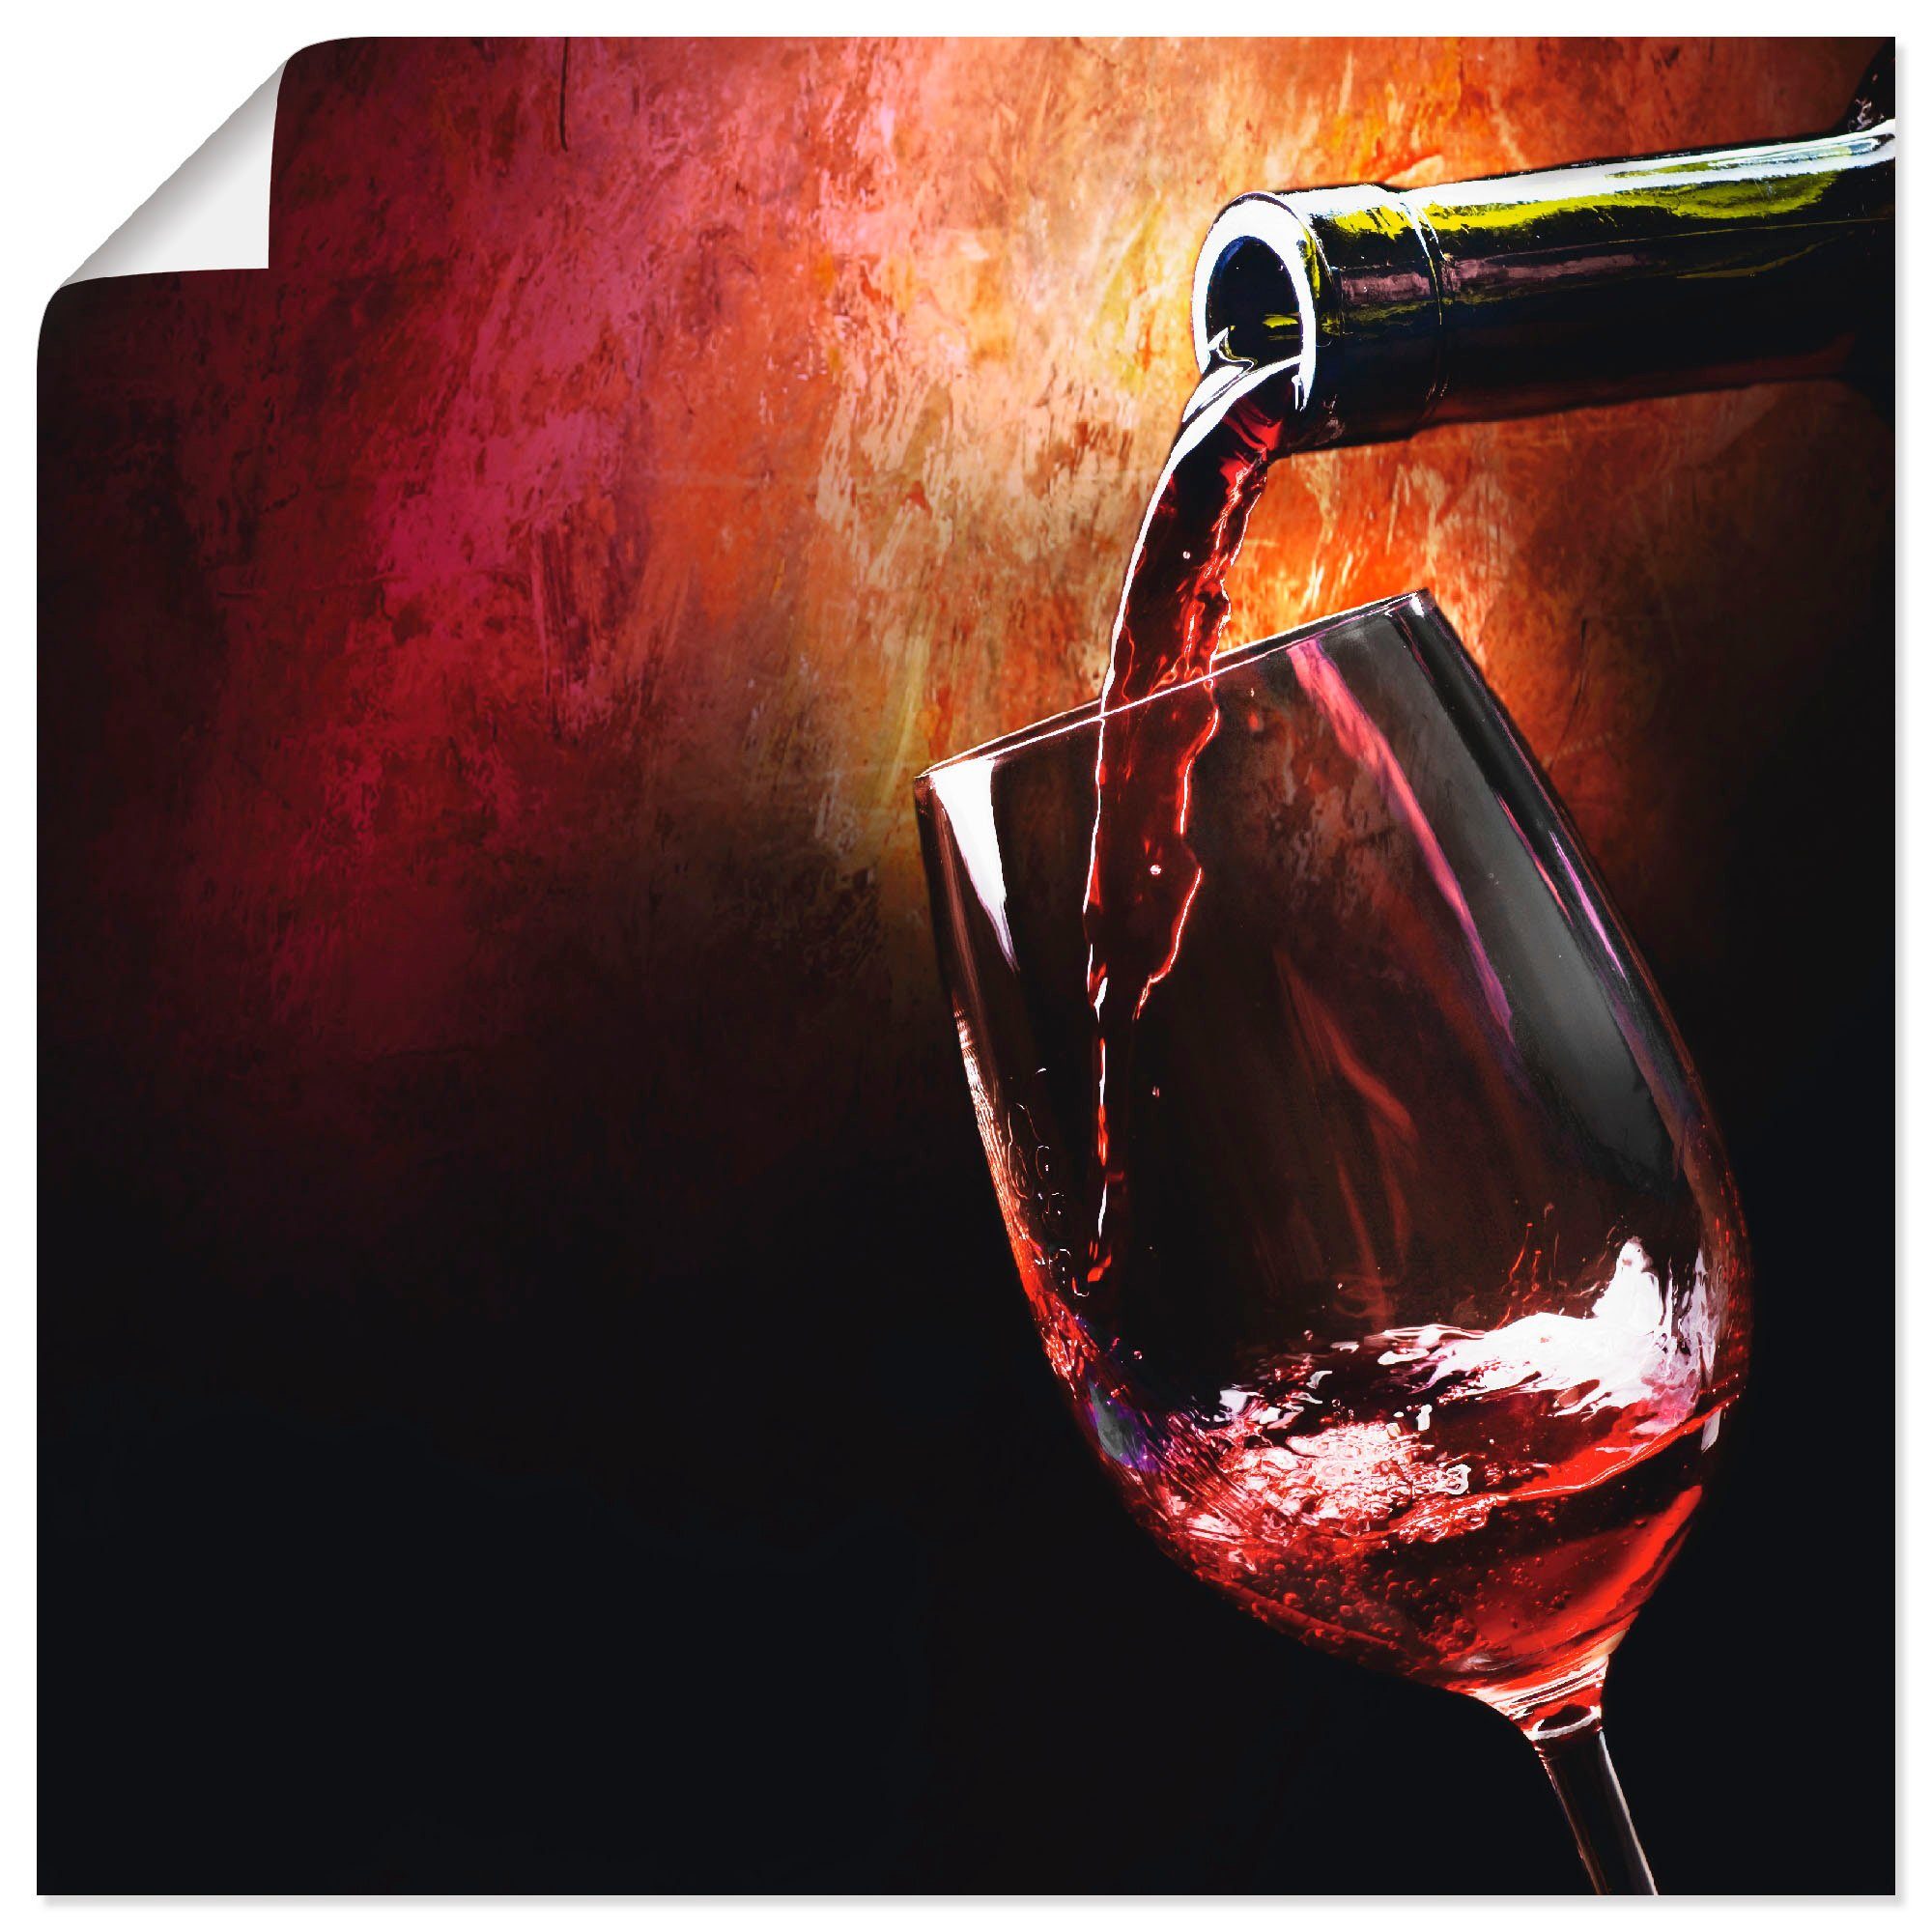 Artland Artprint Wijn - rode wijn in vele afmetingen & productsoorten - artprint van aluminium / artprint voor buiten, artprint op linnen, poster, muursticker / wandfolie ook gesch